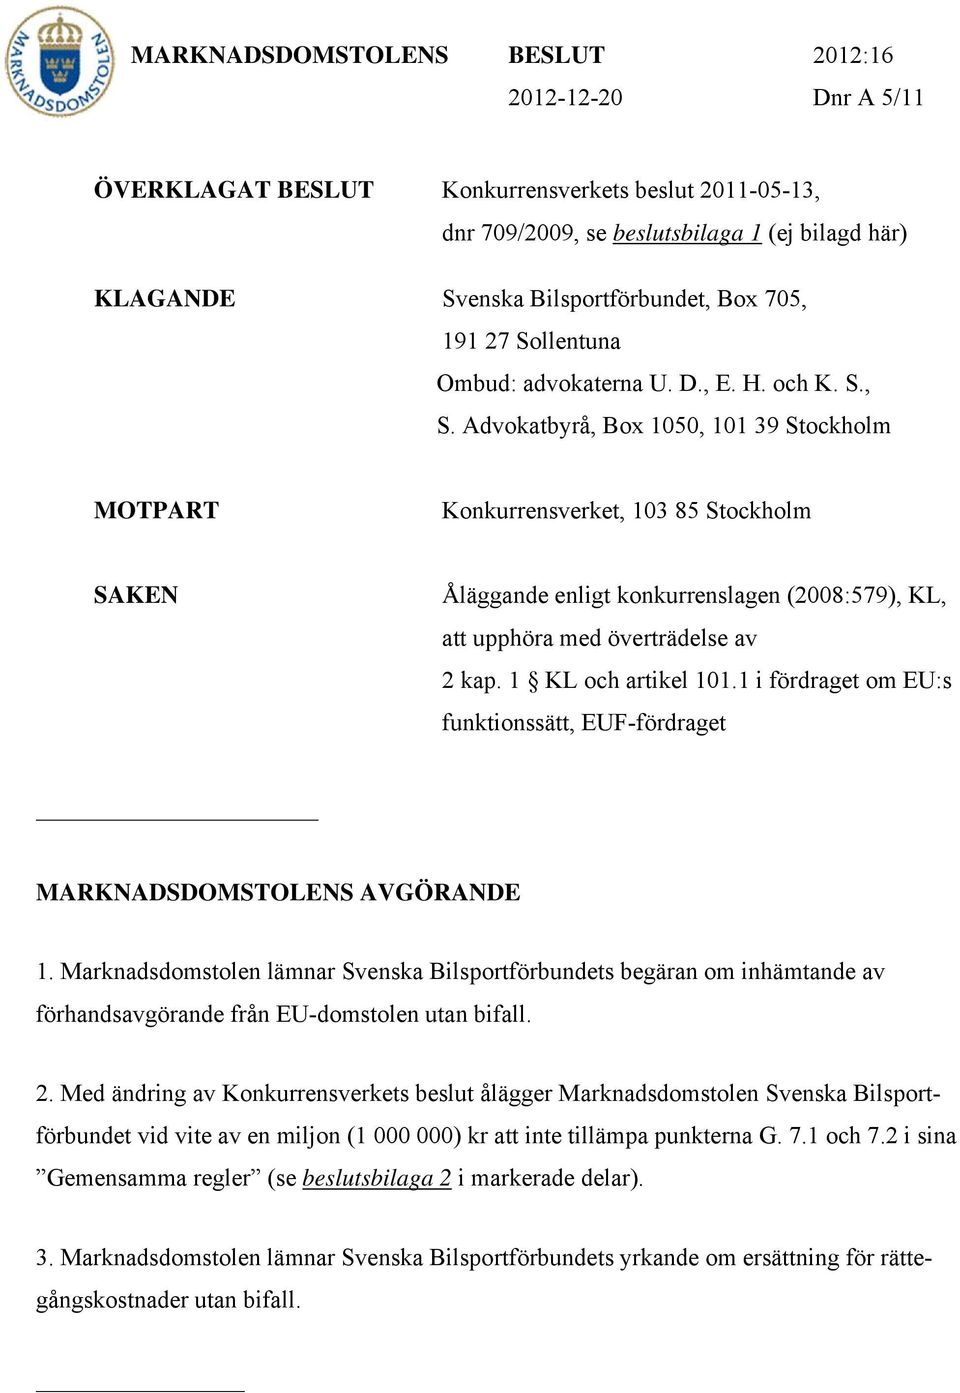 Advokatbyrå, Box 1050, 101 39 Stockholm MOTPART Konkurrensverket, 103 85 Stockholm SAKEN Åläggande enligt konkurrenslagen (2008:579), KL, att upphöra med överträdelse av 2 kap. 1 KL och artikel 101.